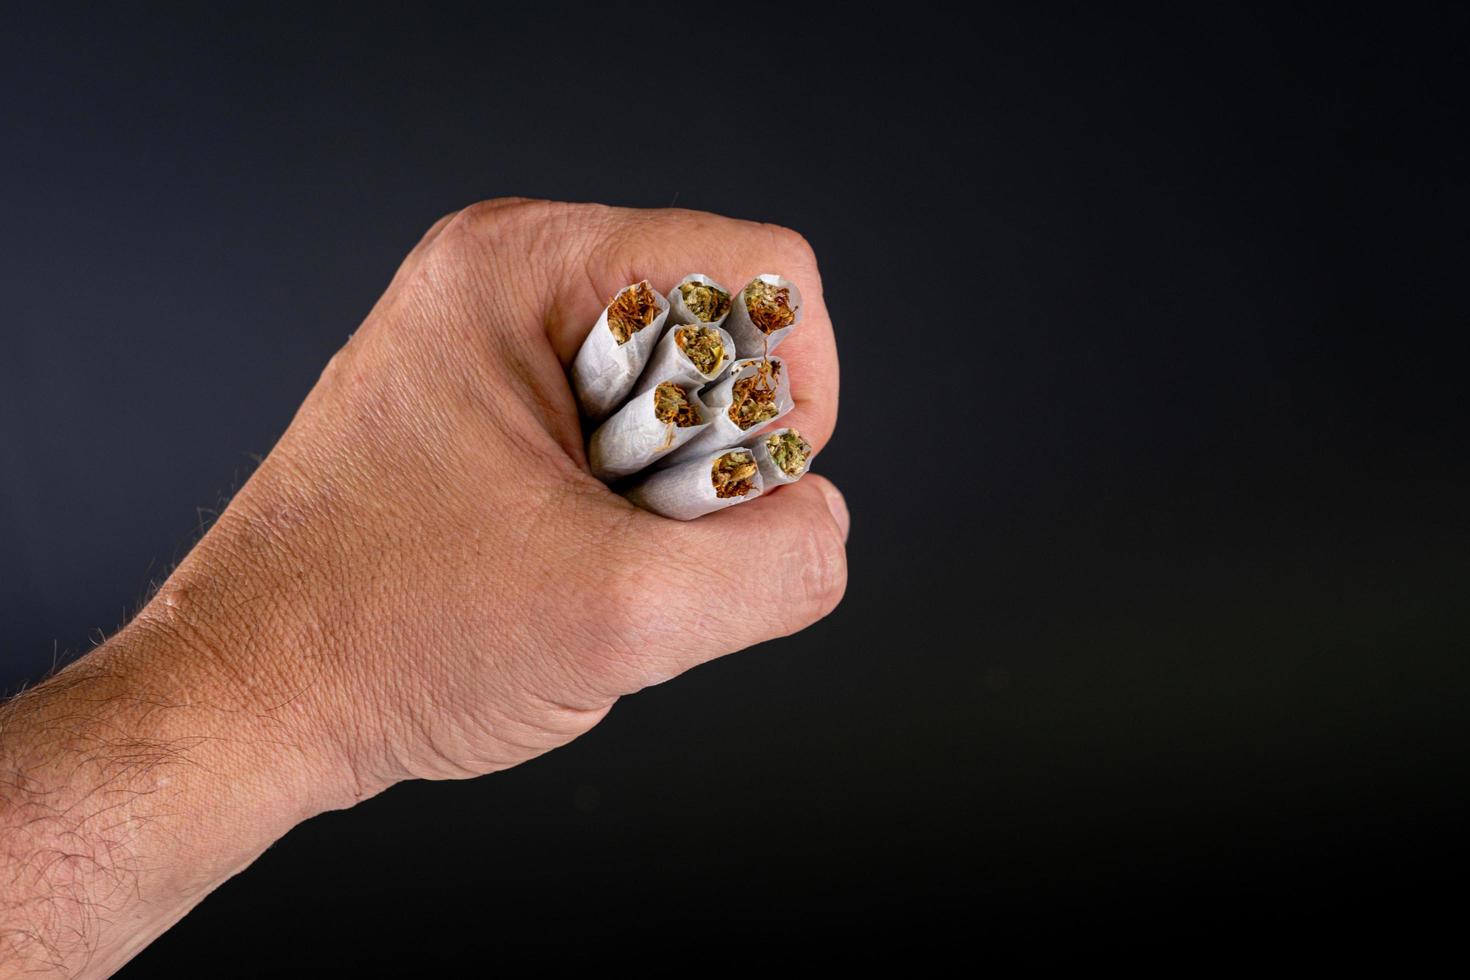 poignée de joints de marijuana dans une main photo